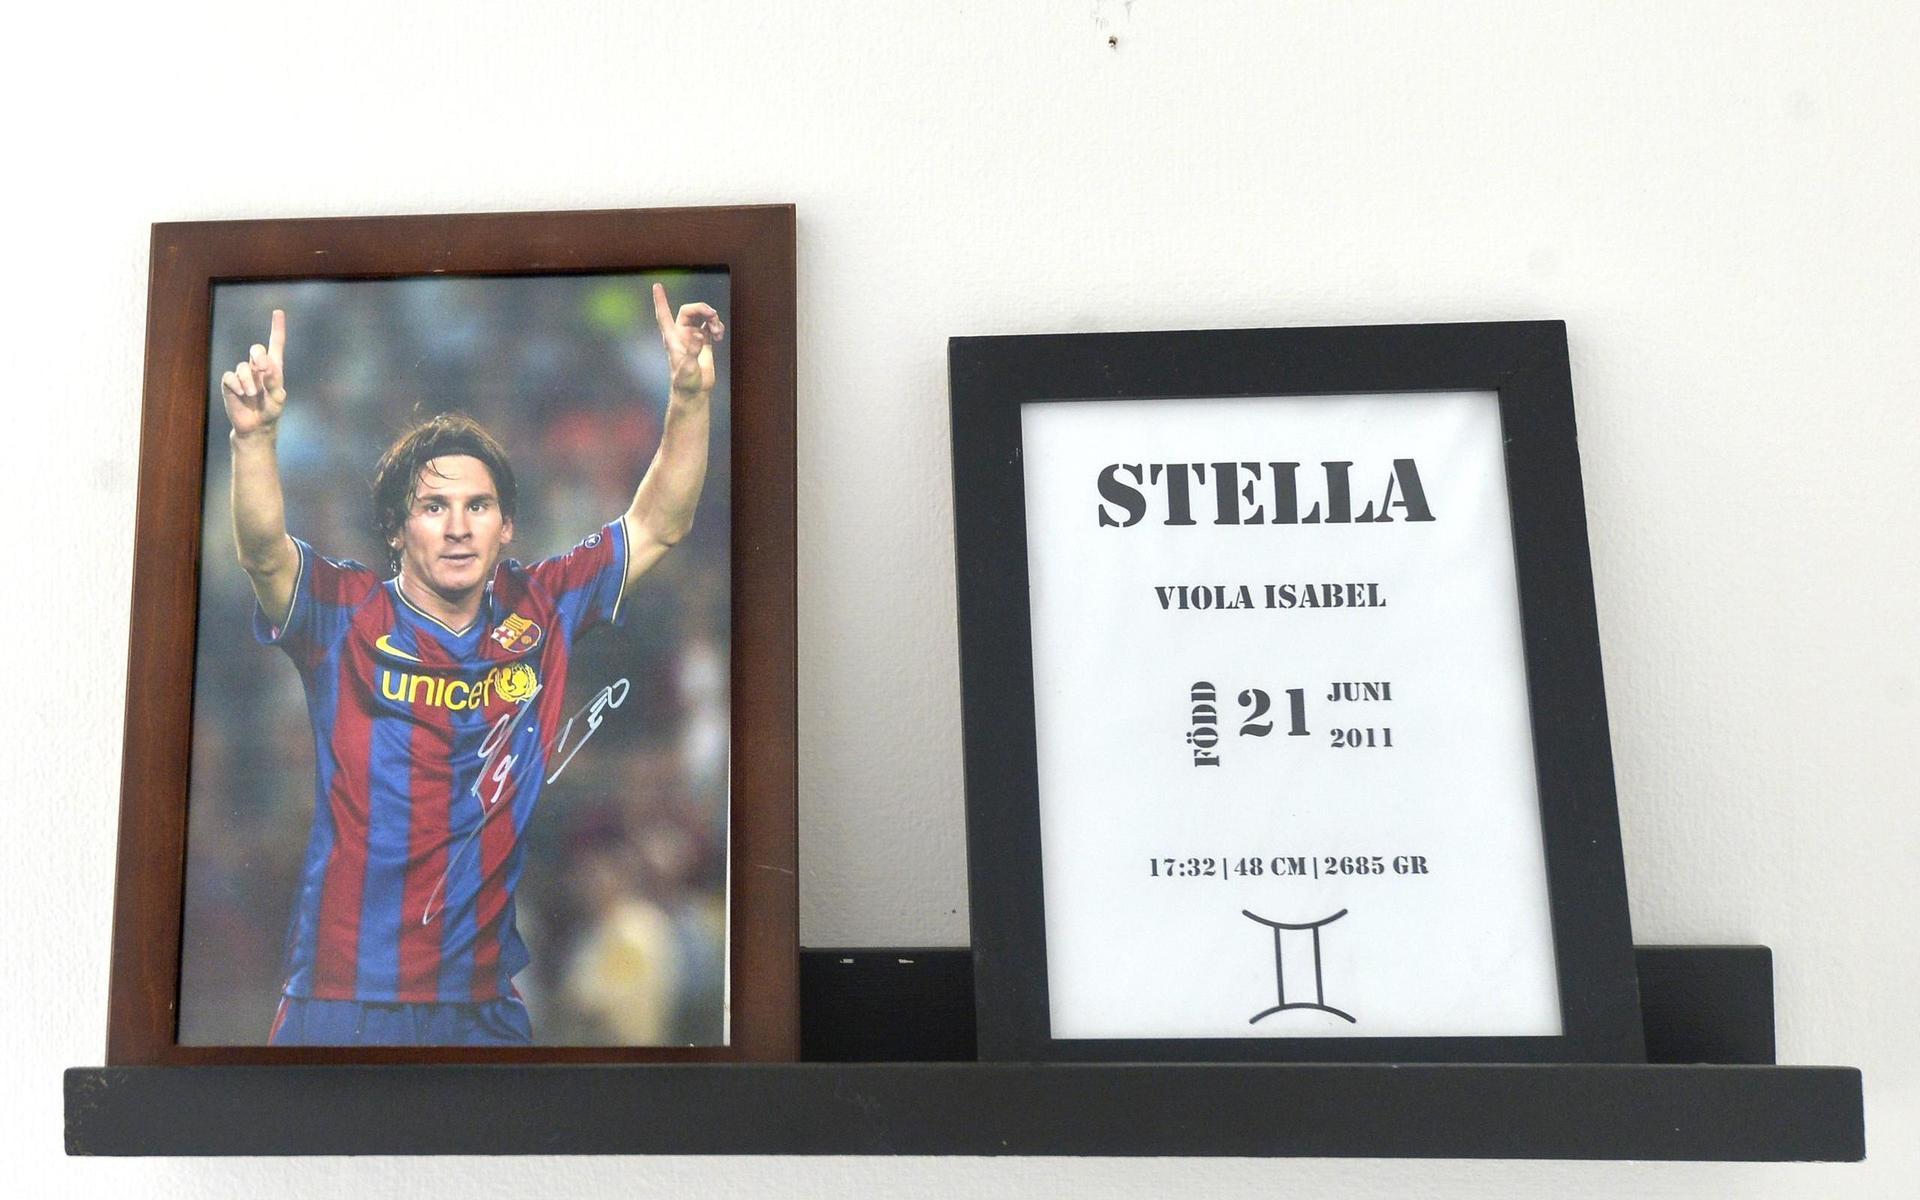 Att nioåriga Stella är en fotbollstjej syns i rummet och Lionel Messi i Barcelona kan väl ingen tycka illa om?